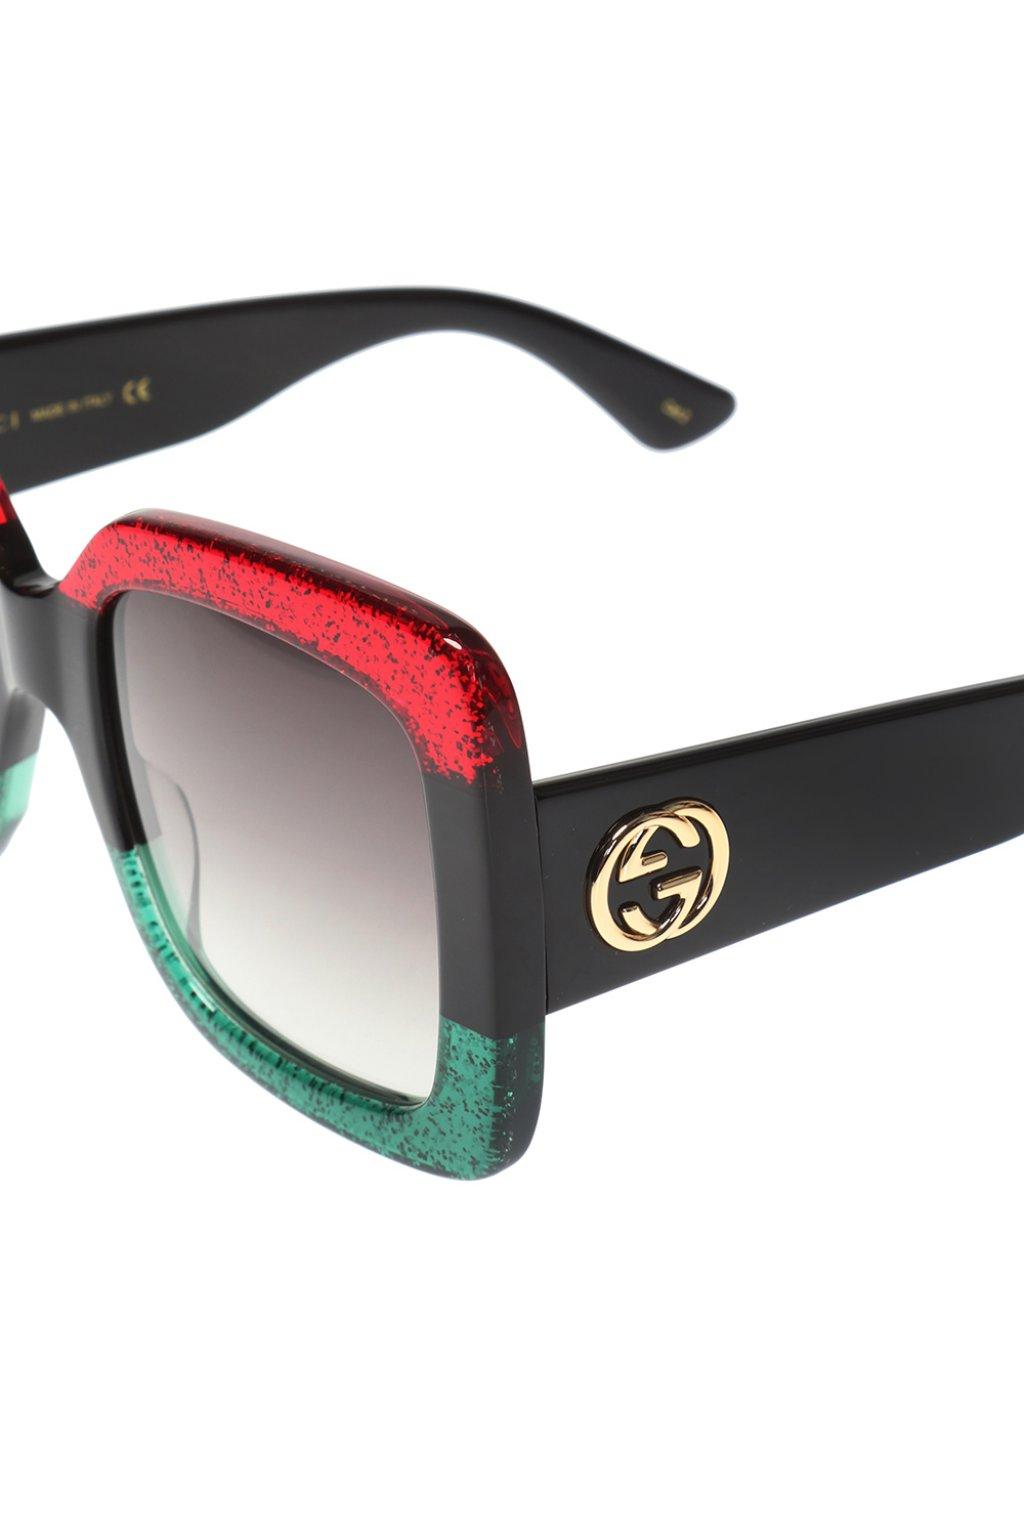 gucci green red sunglasses